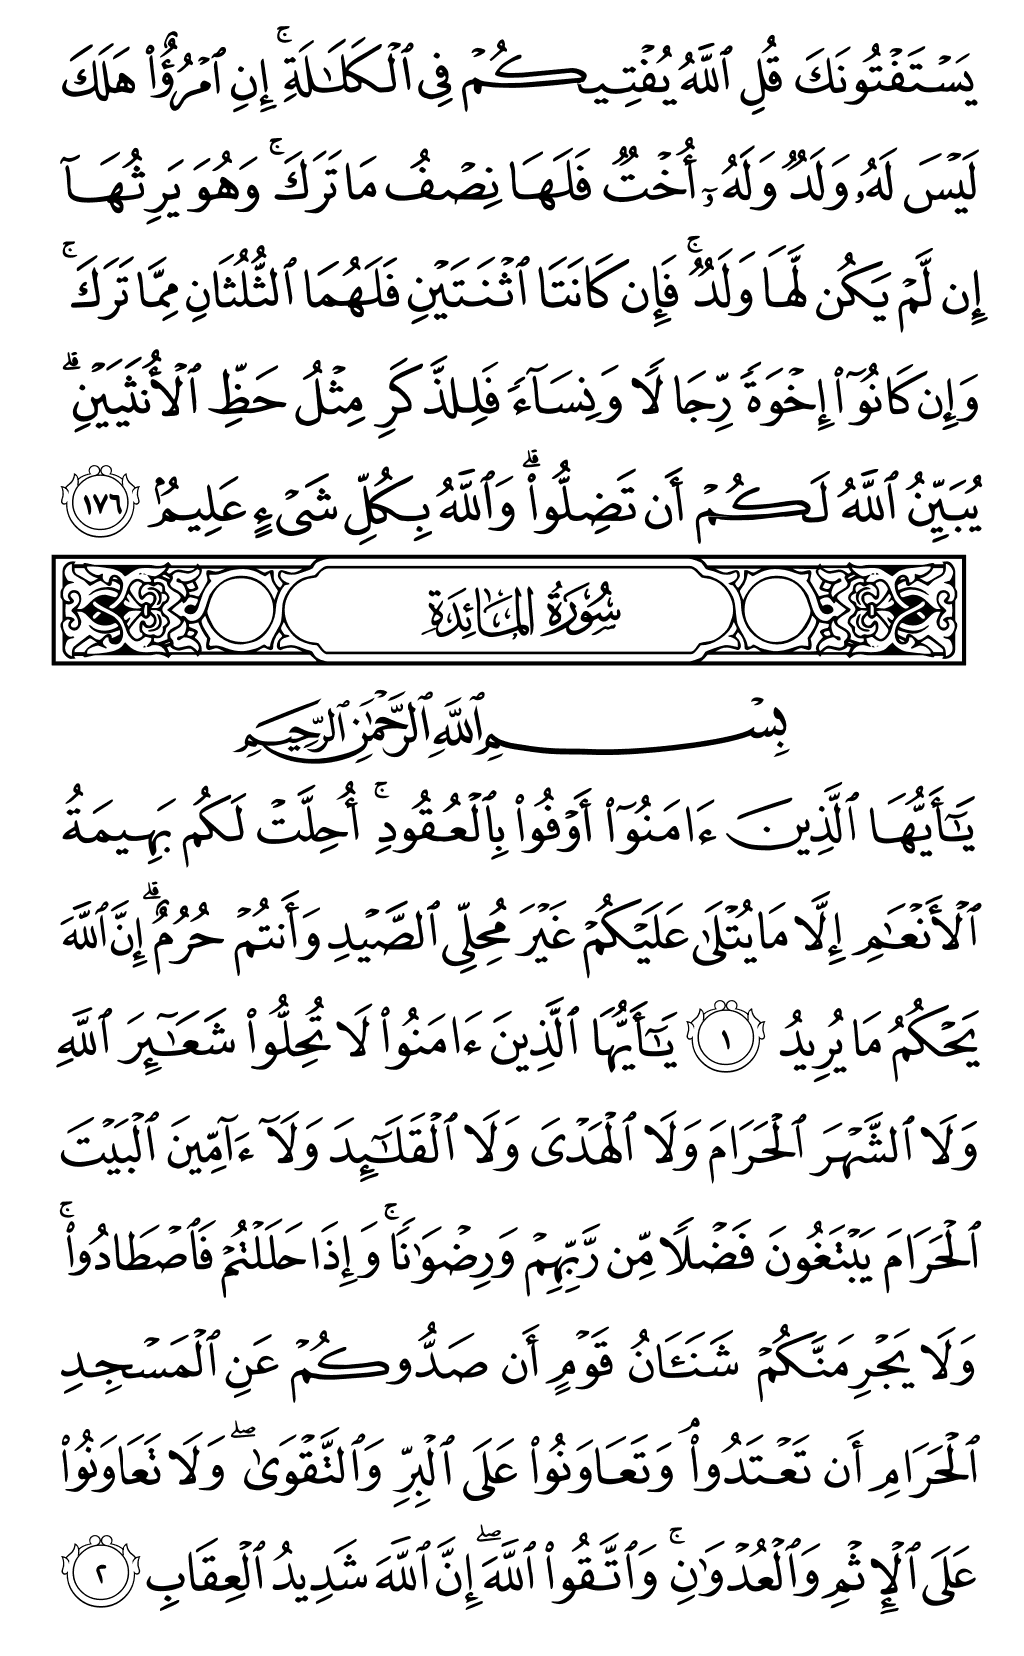 الصفحة رقم 106 من القرآن الكريم